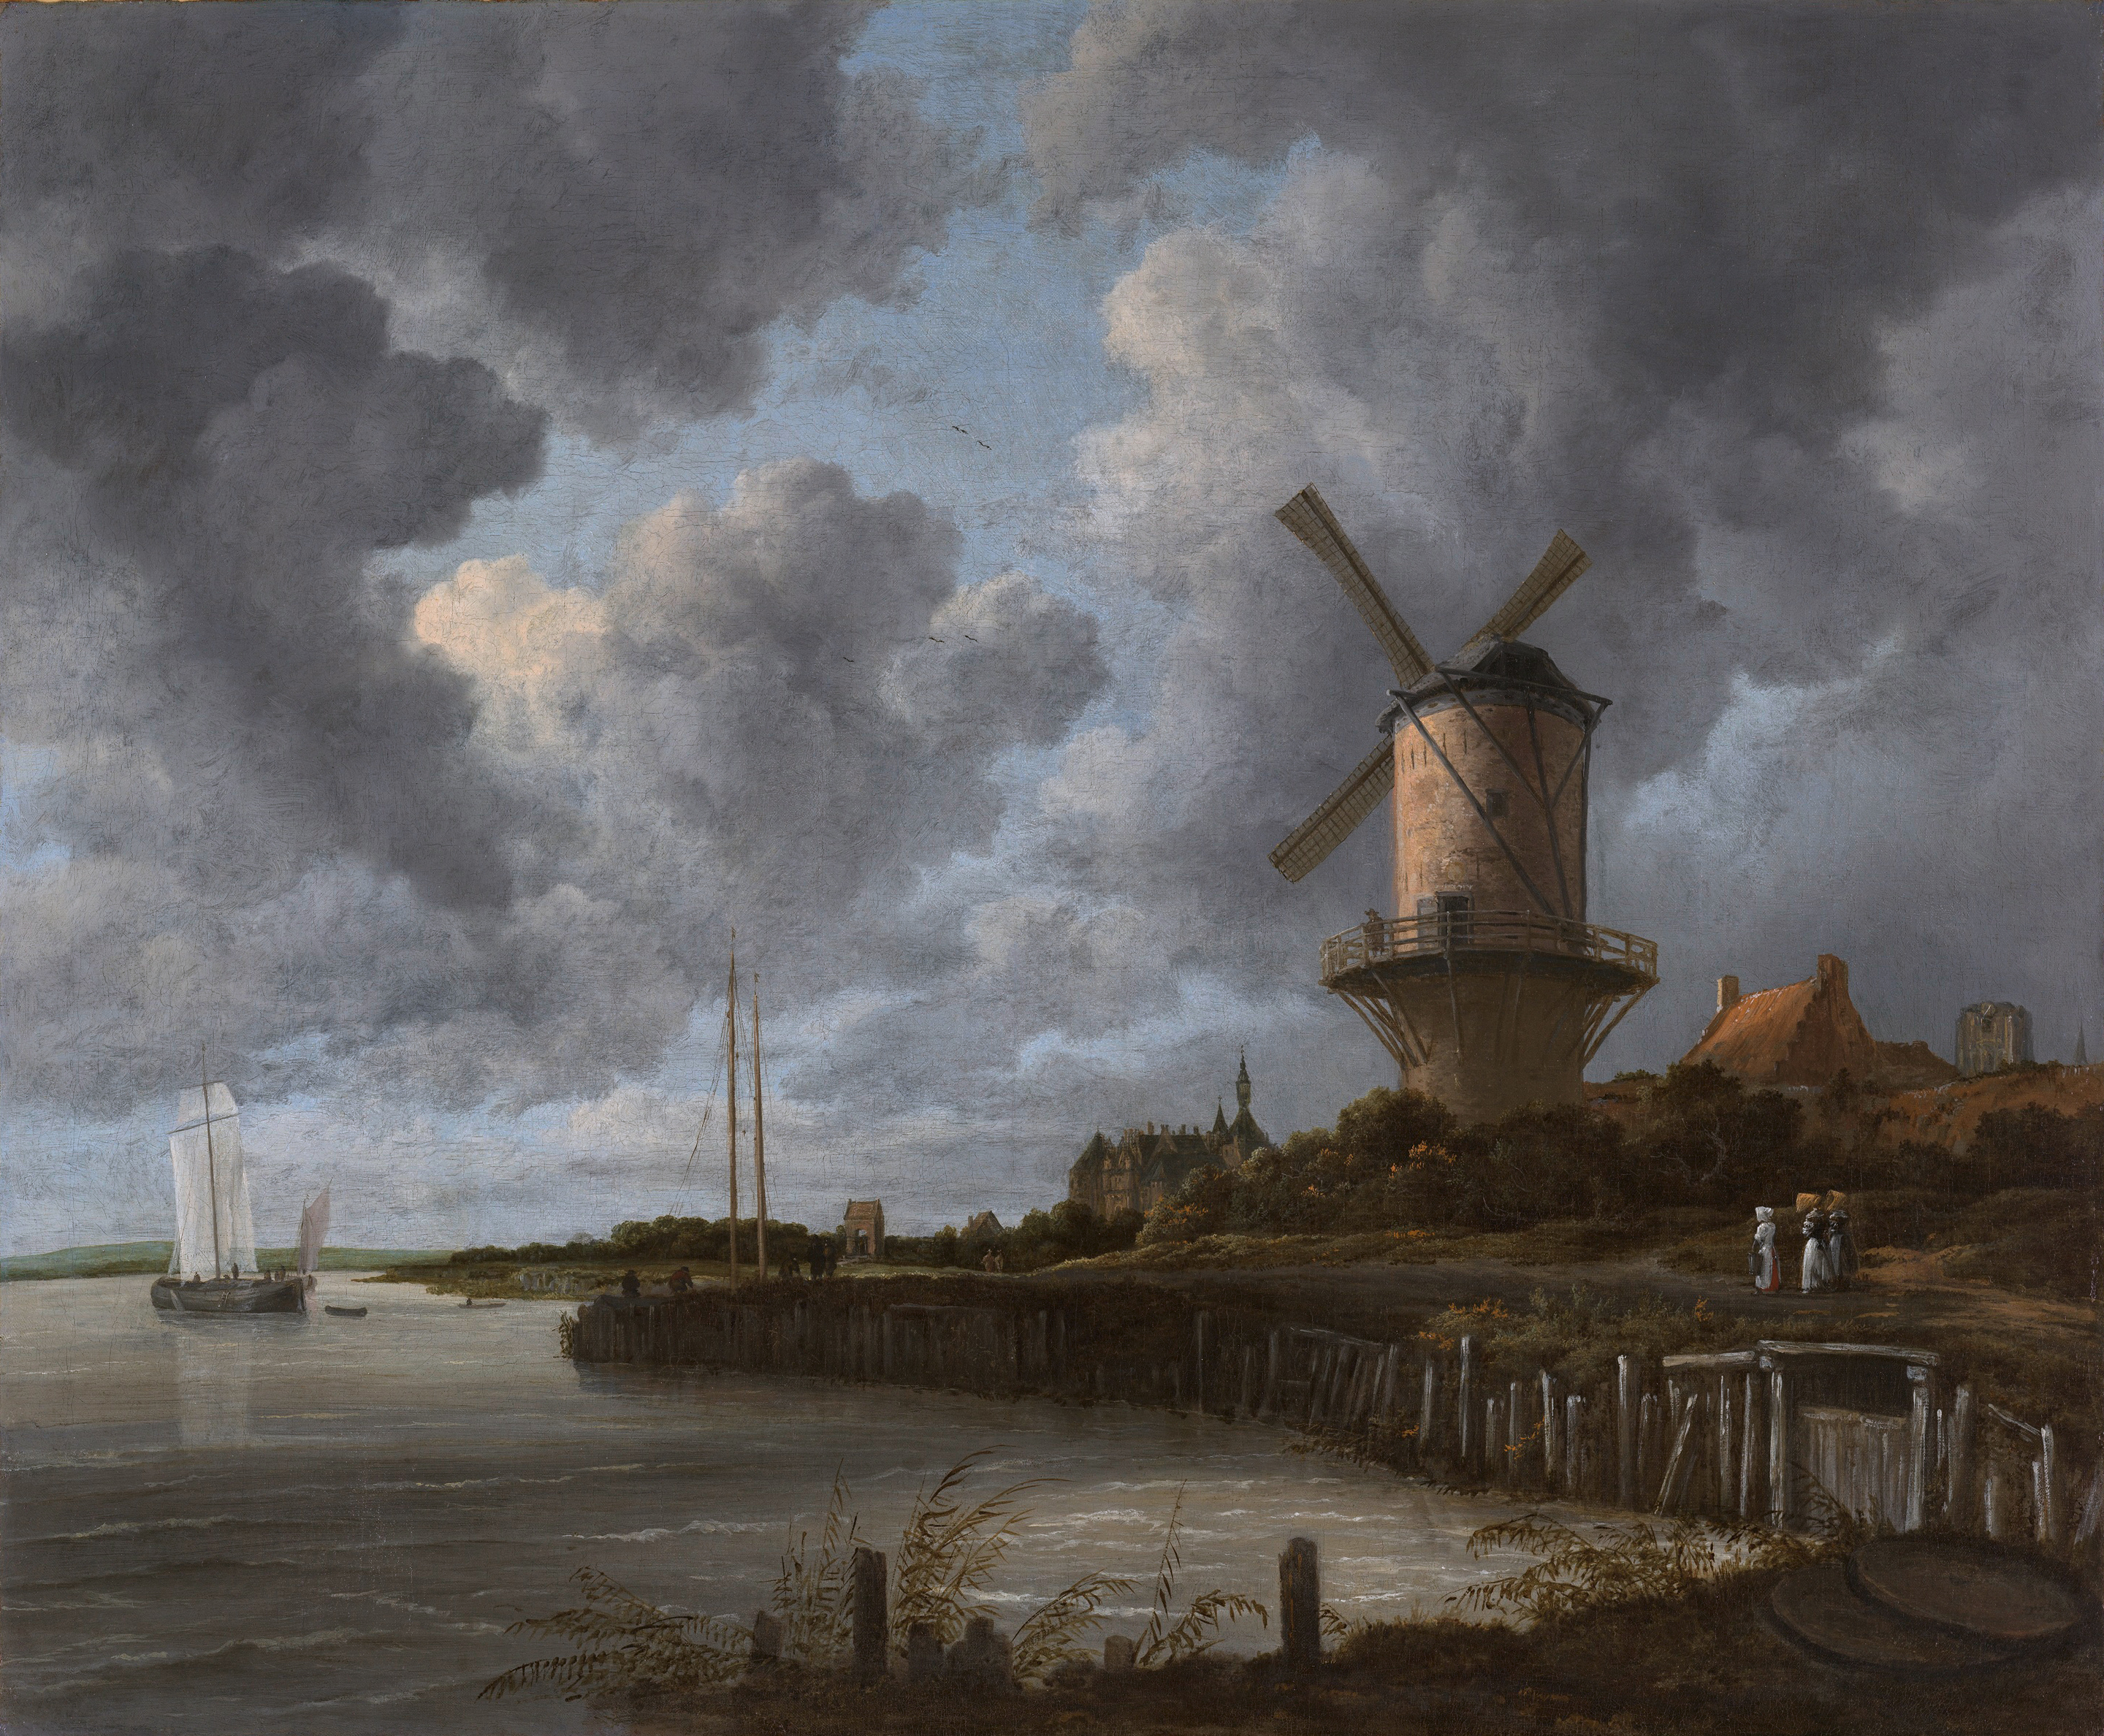 迪尔斯泰德附近韦克（Wijk Bij Duurstede）的风车 by 雅各布 鲁伊斯达尔 - c. 1670 - 83 x 101 cm 